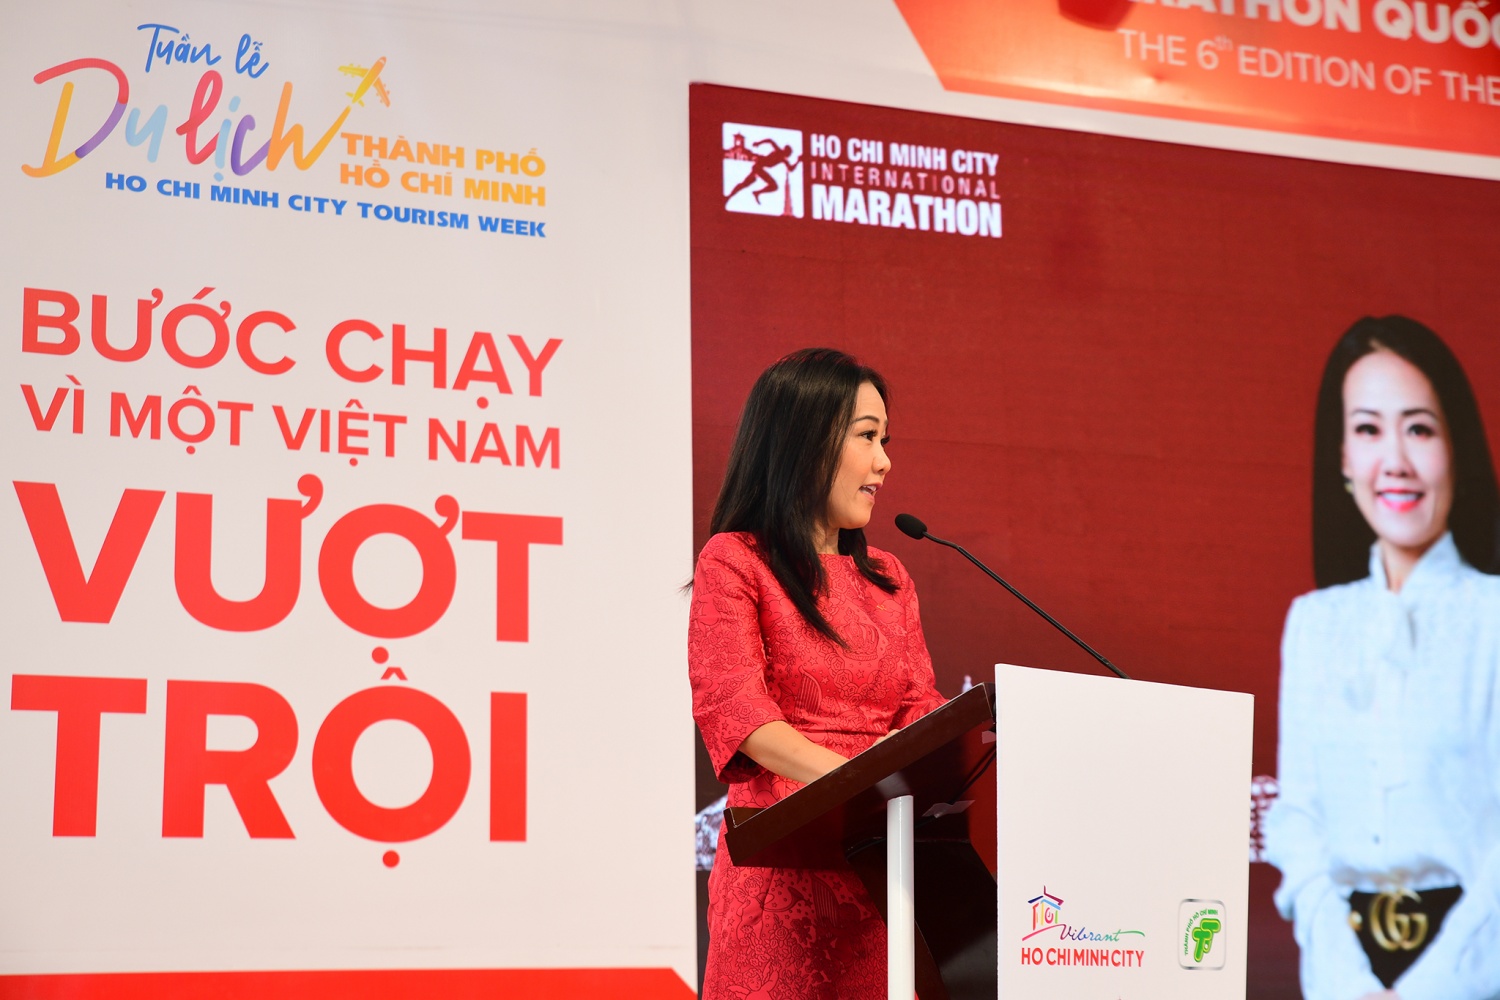 Khai mạc giải Marathon Quốc tế lớn nhất Việt Nam Techcombank mùa thứ 6